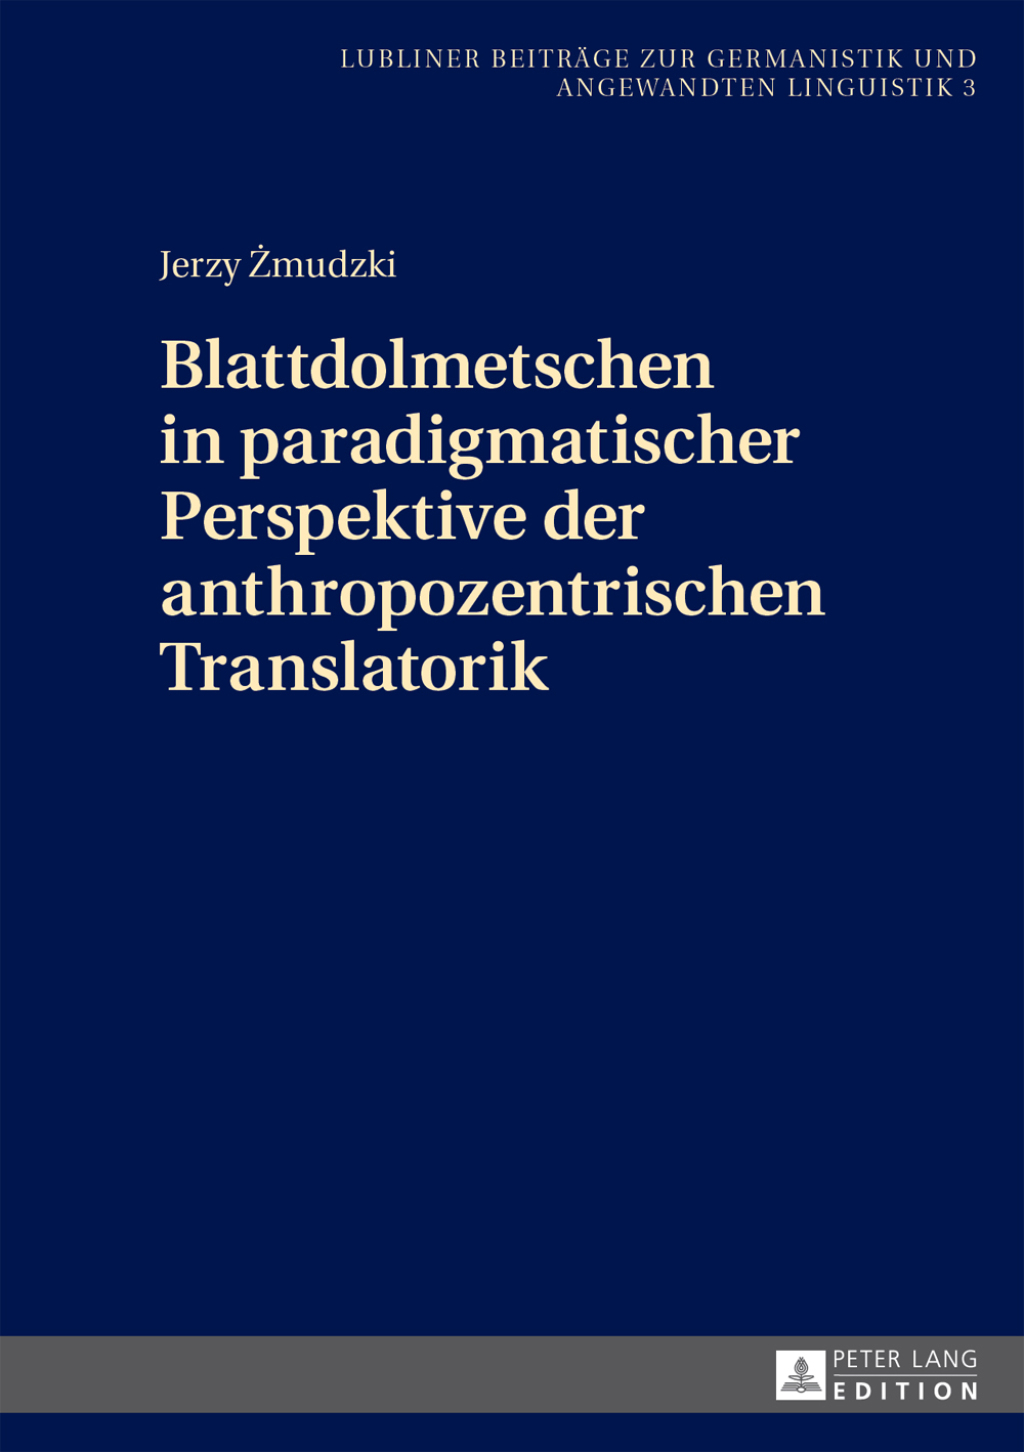 Blattdolmetschen in paradigmatischer Perspektive der anthropozentrischen Translatorik (eBook) - Jerzy Zmudzki